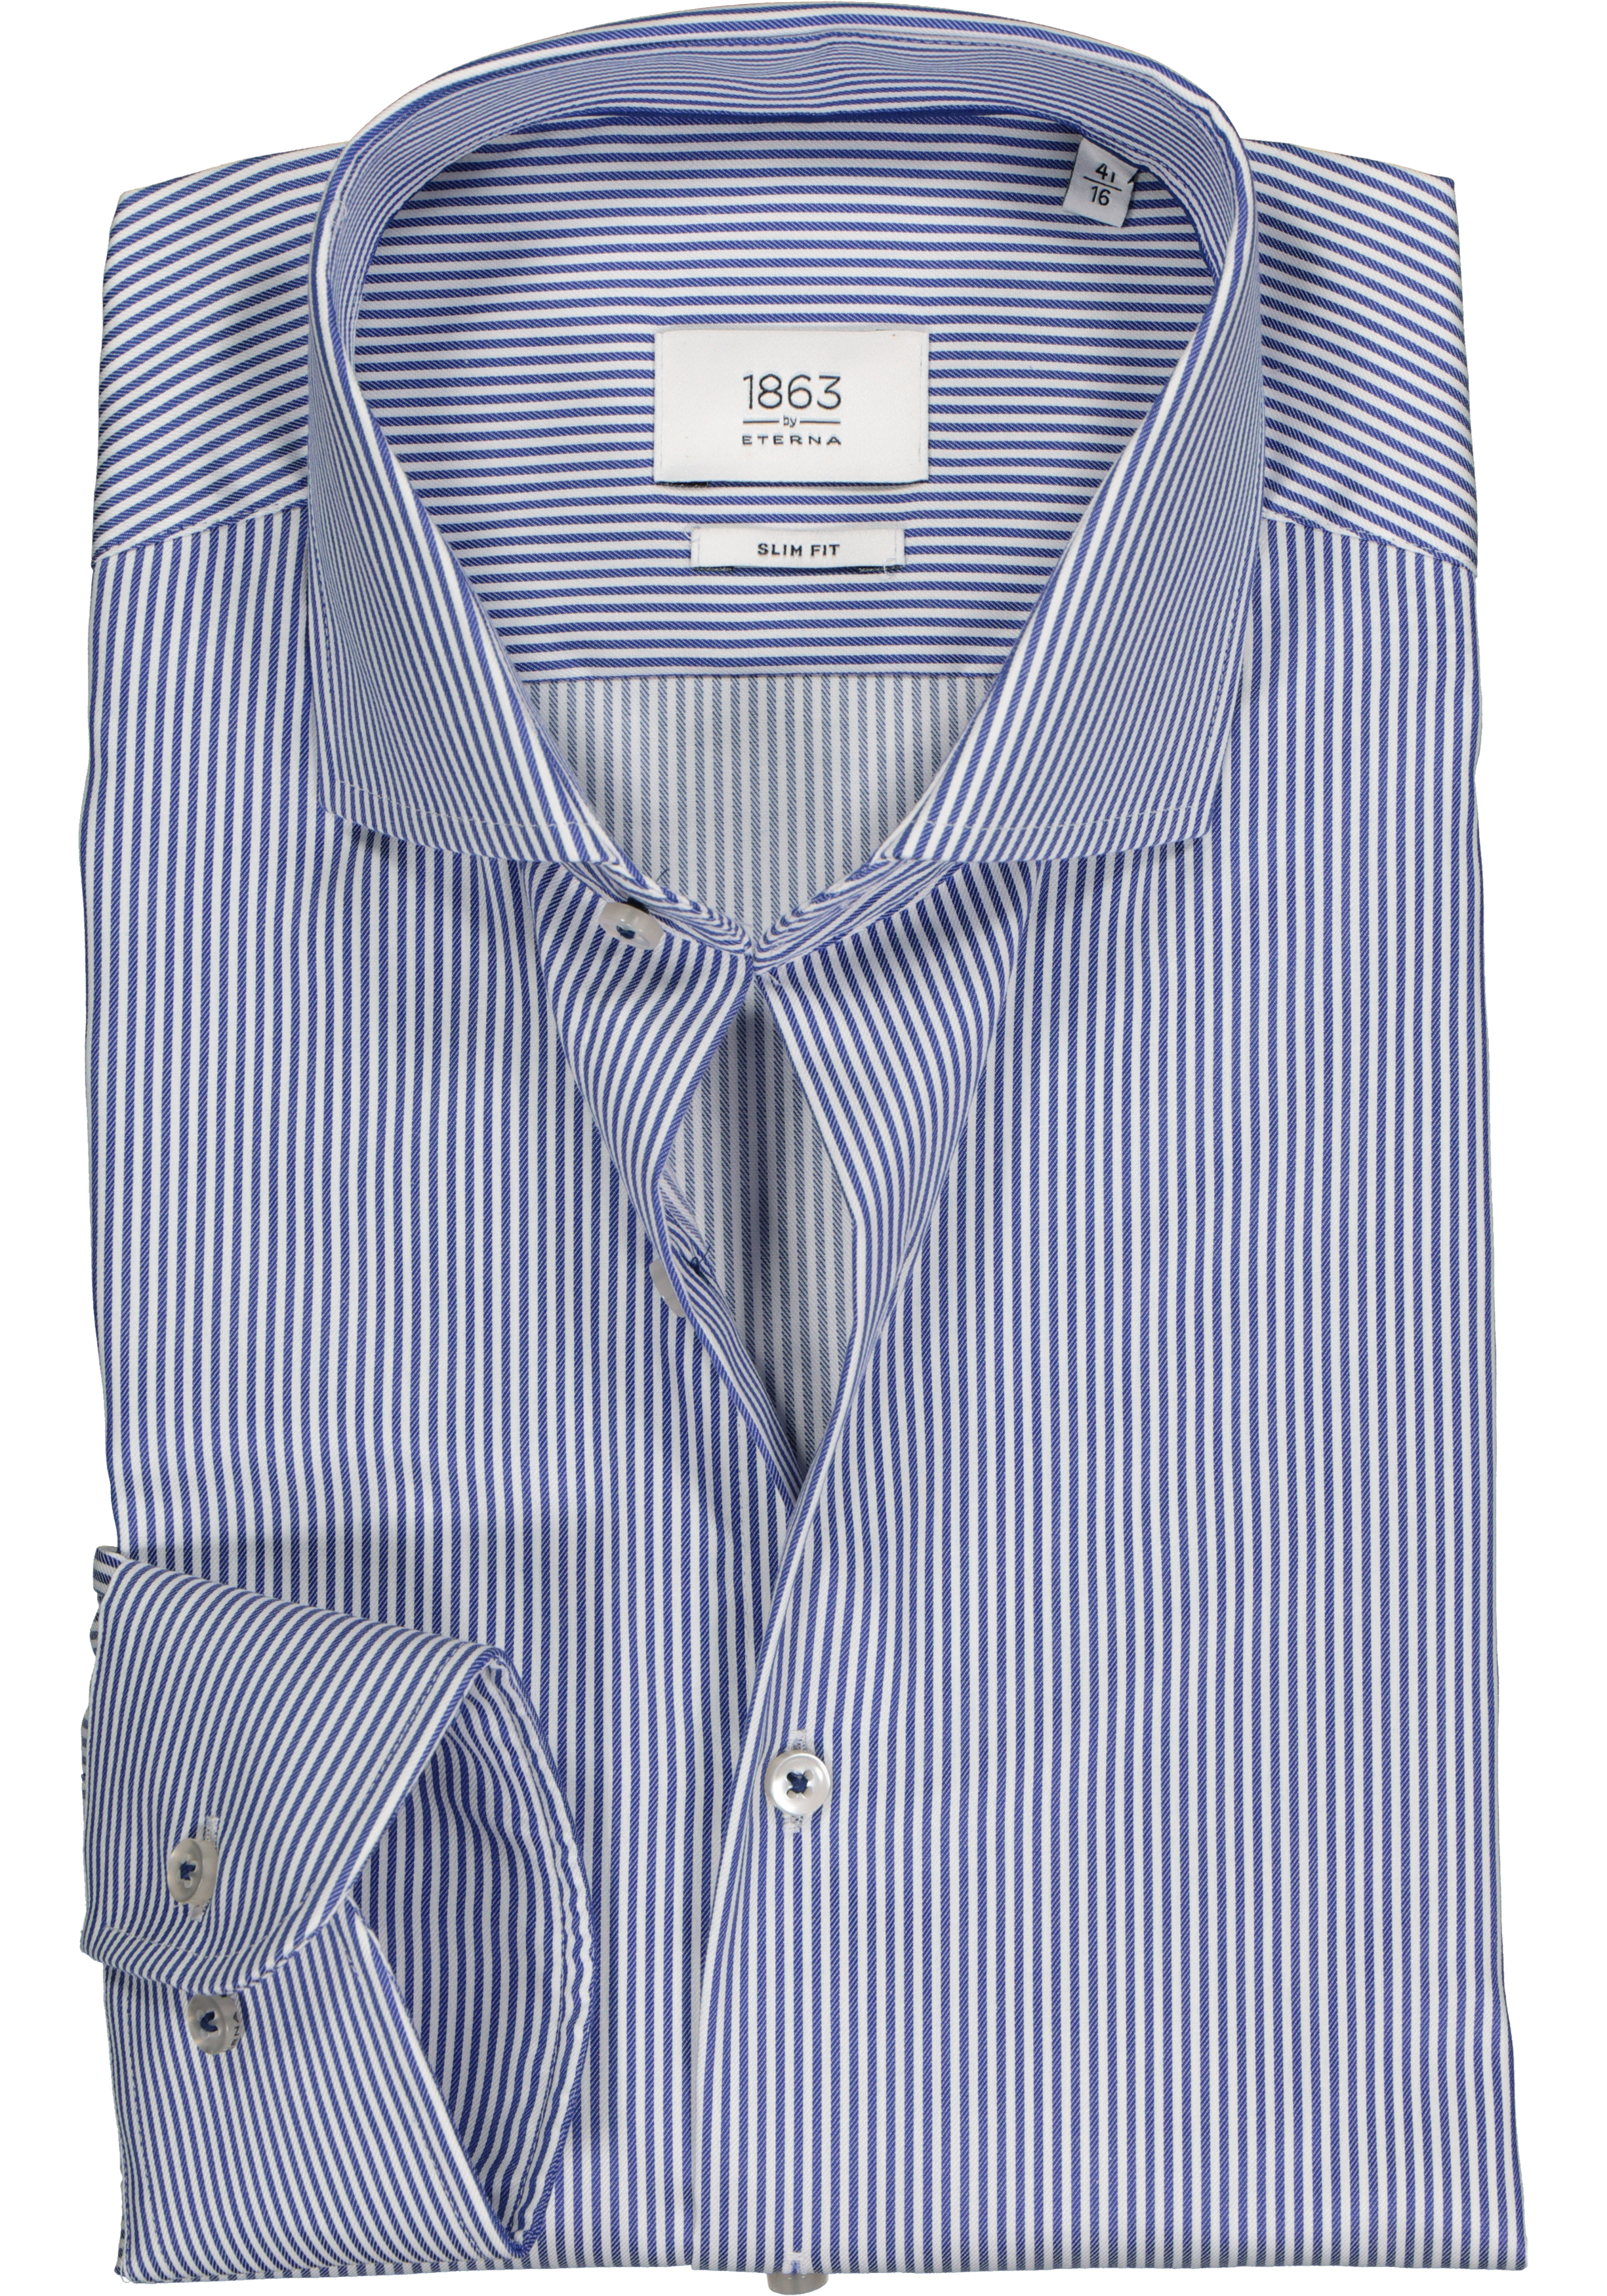 ETERNA 1863 slim fit premium overhemd, 2-ply twill heren overhemd, blauw met wit gestreept